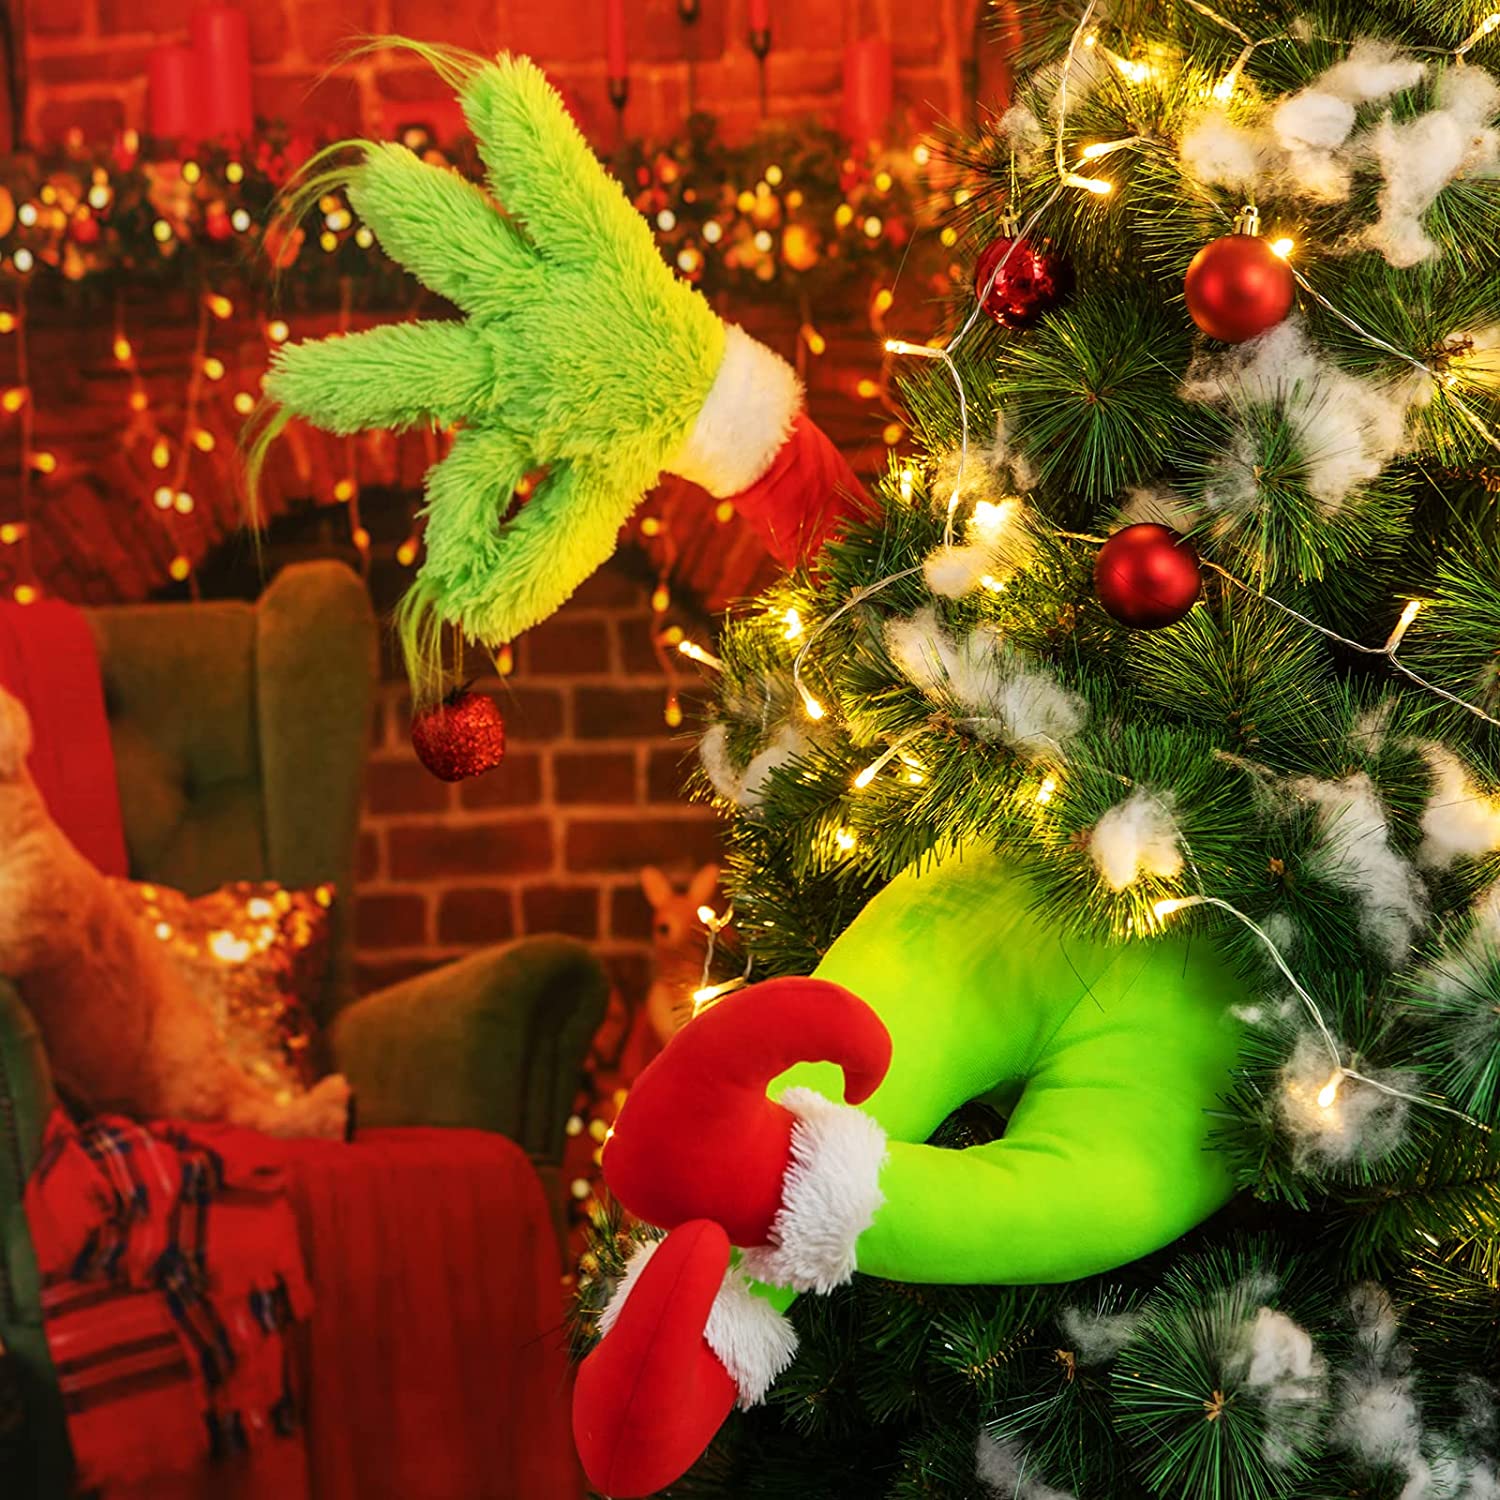 Green monster Christmas tree topper, green monster legs tree topper,  Christmas tree topper, green monster topper, whimsical tree topper